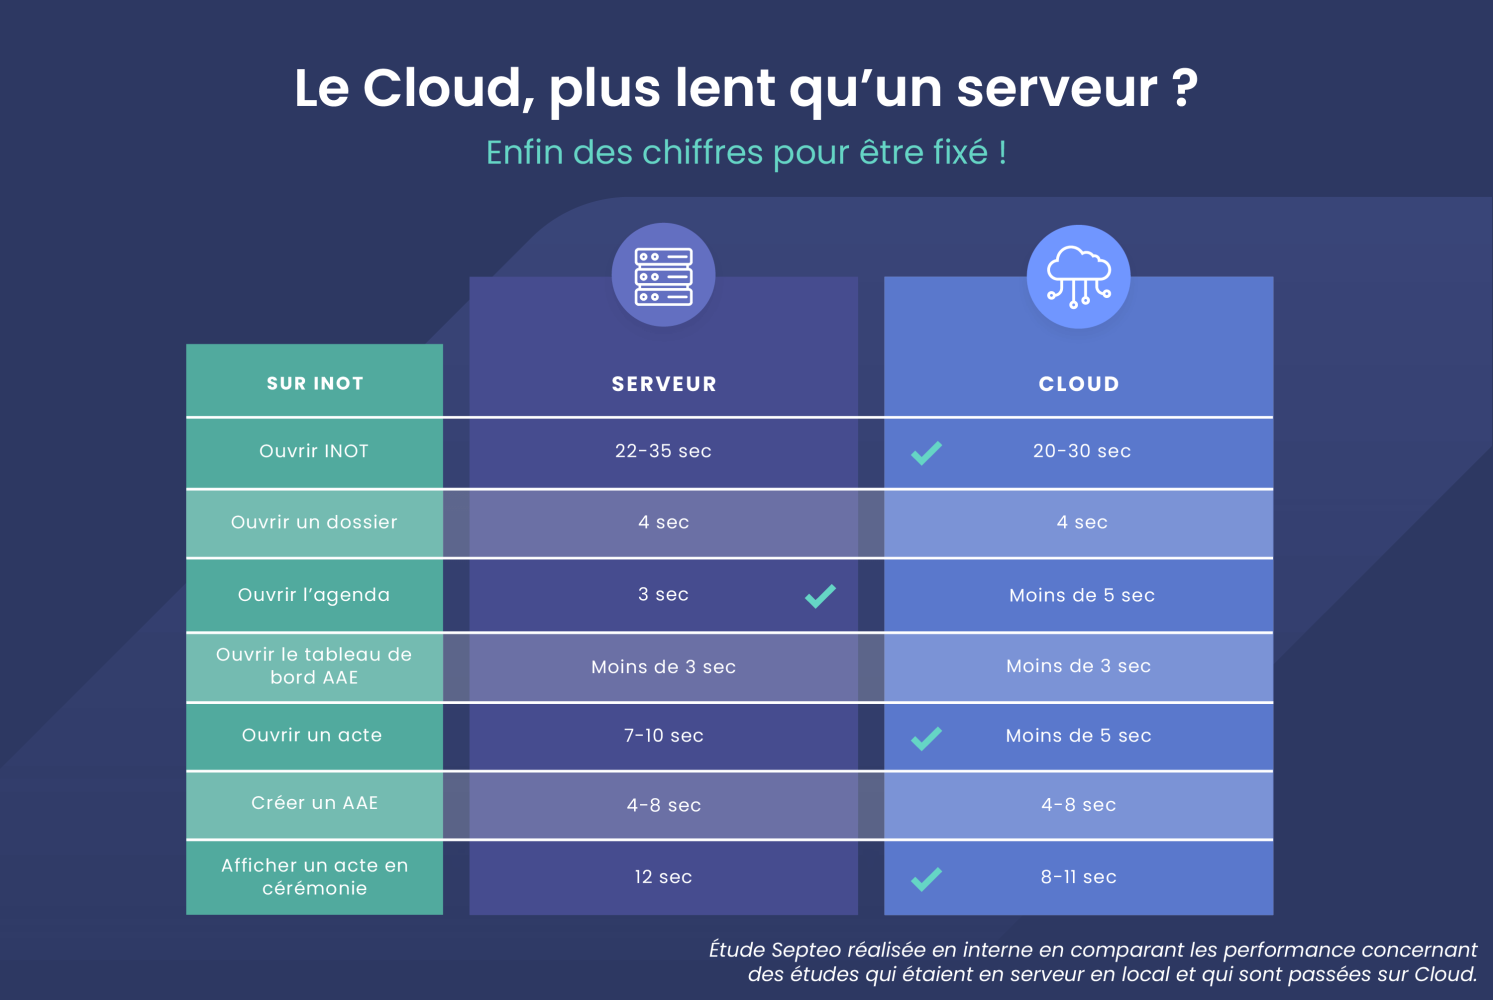 Le Cloud est plus lent que le serveur ?